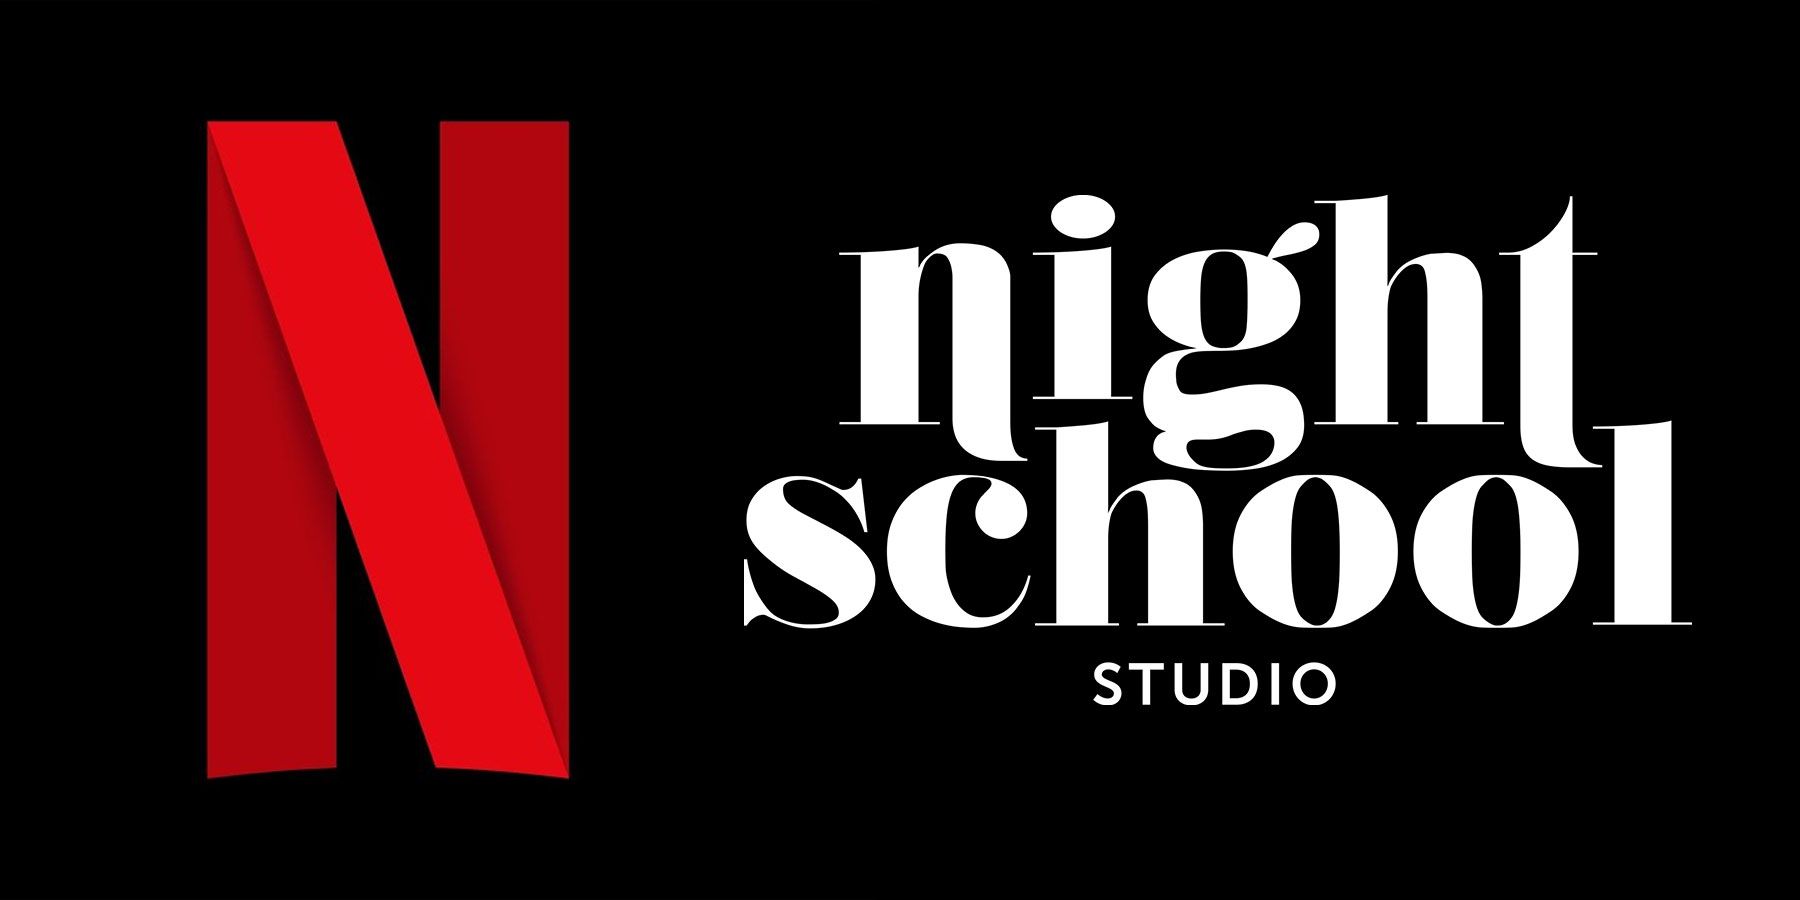 L’acquisition de Night School Studio par Netflix est un bon signe pour ses ambitions en matière de streaming